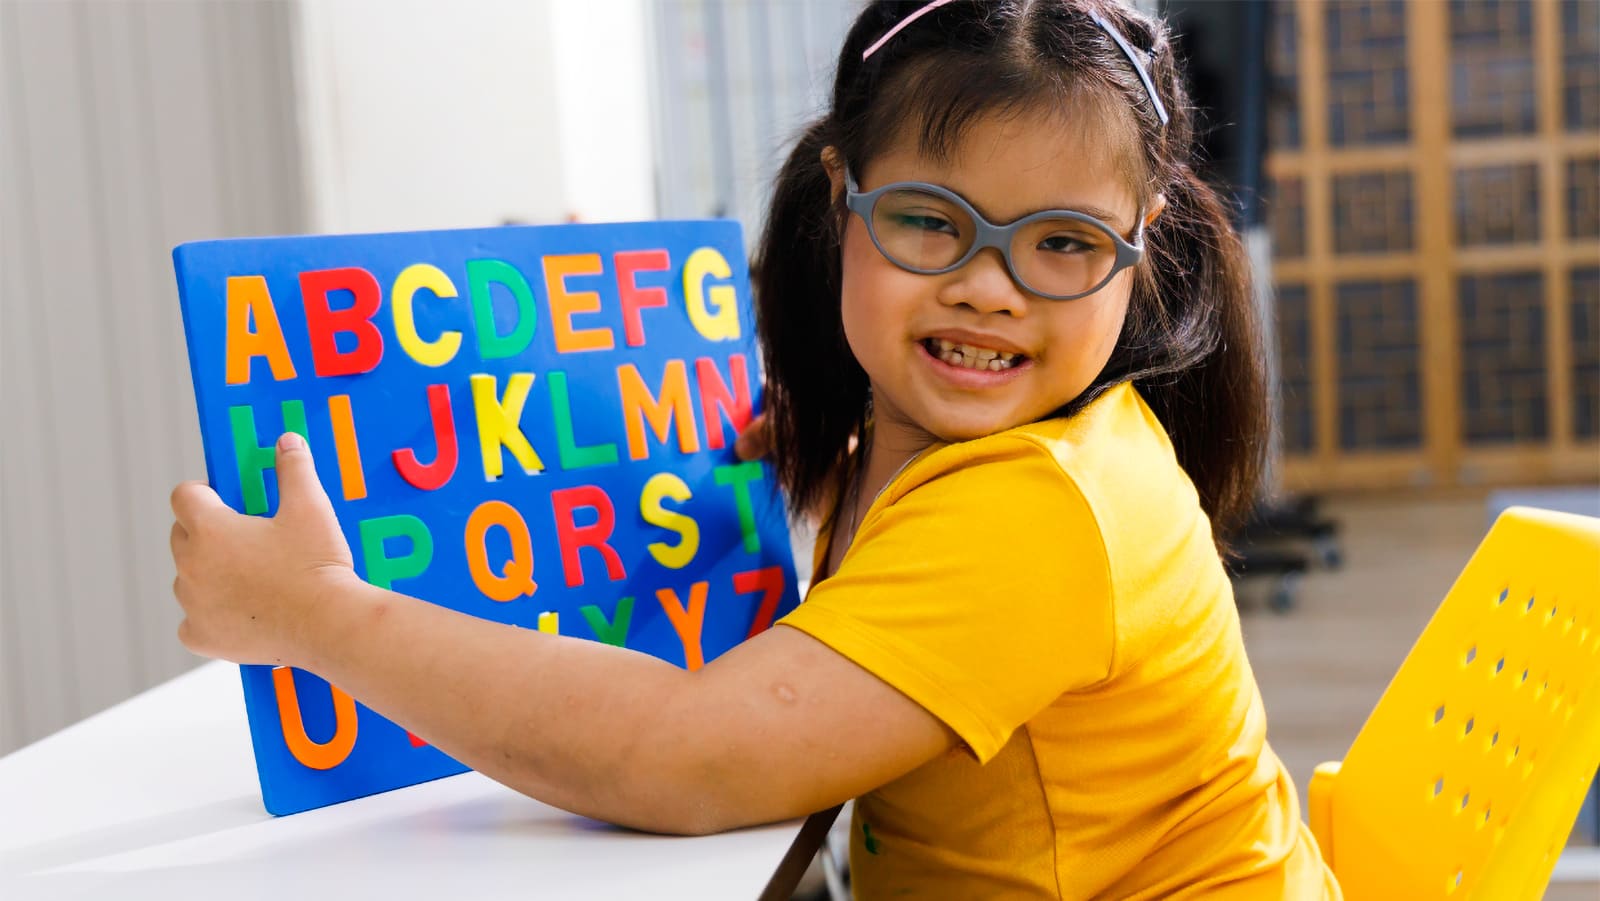 Criança segurando um livro didático com o alfabeto, retratando a educação inclusiva na escola regular.